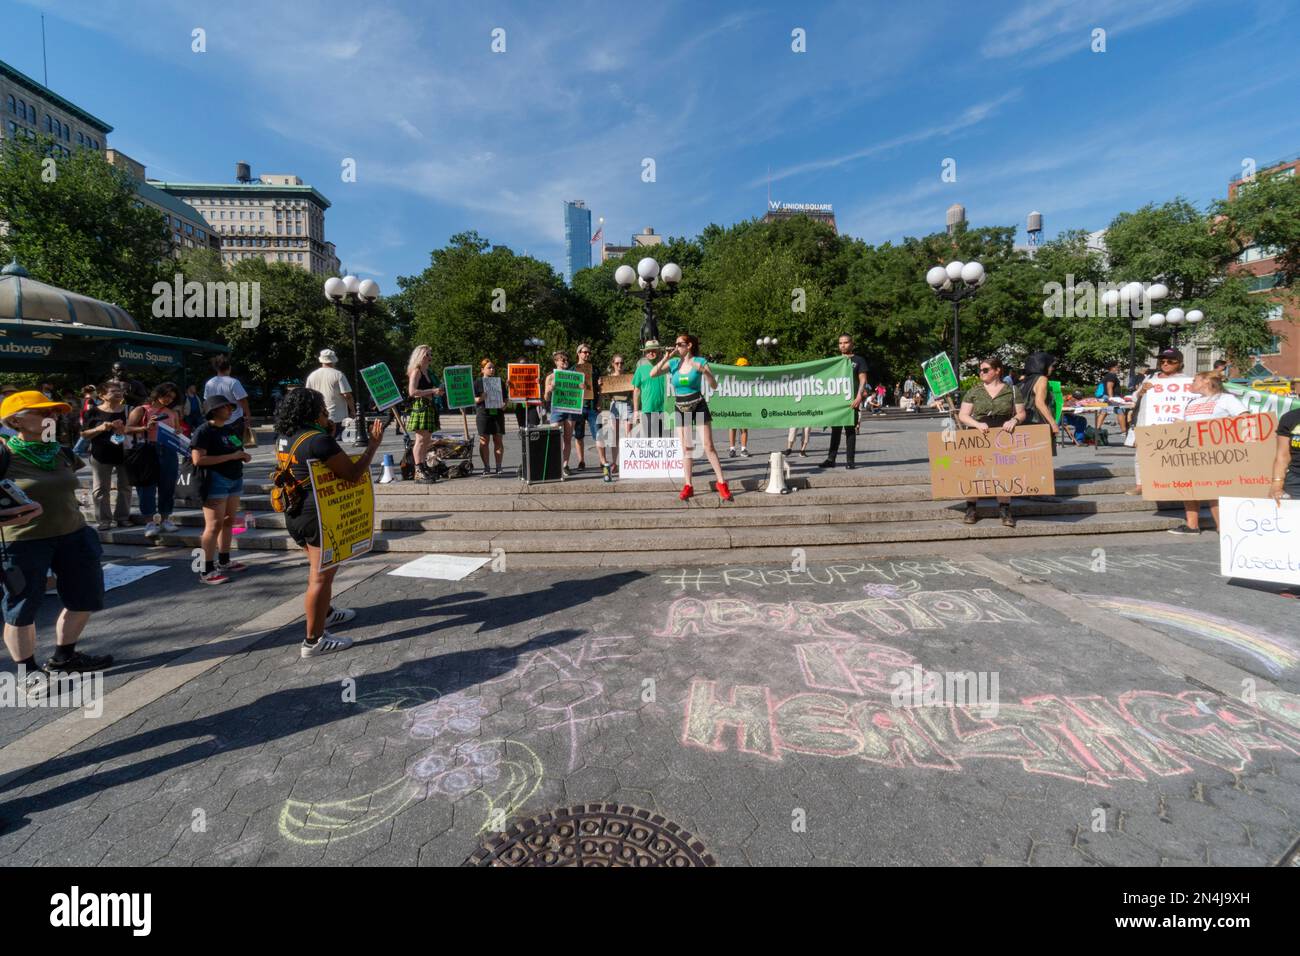 NEW YORK, NEW YORK - 13 LUGLIO: Gli attivisti 'Rise Up 4 Abortion Rights' si riuniscono e protestano a Union Square il 13 luglio 2022 a New York City. Aborto rig Foto Stock